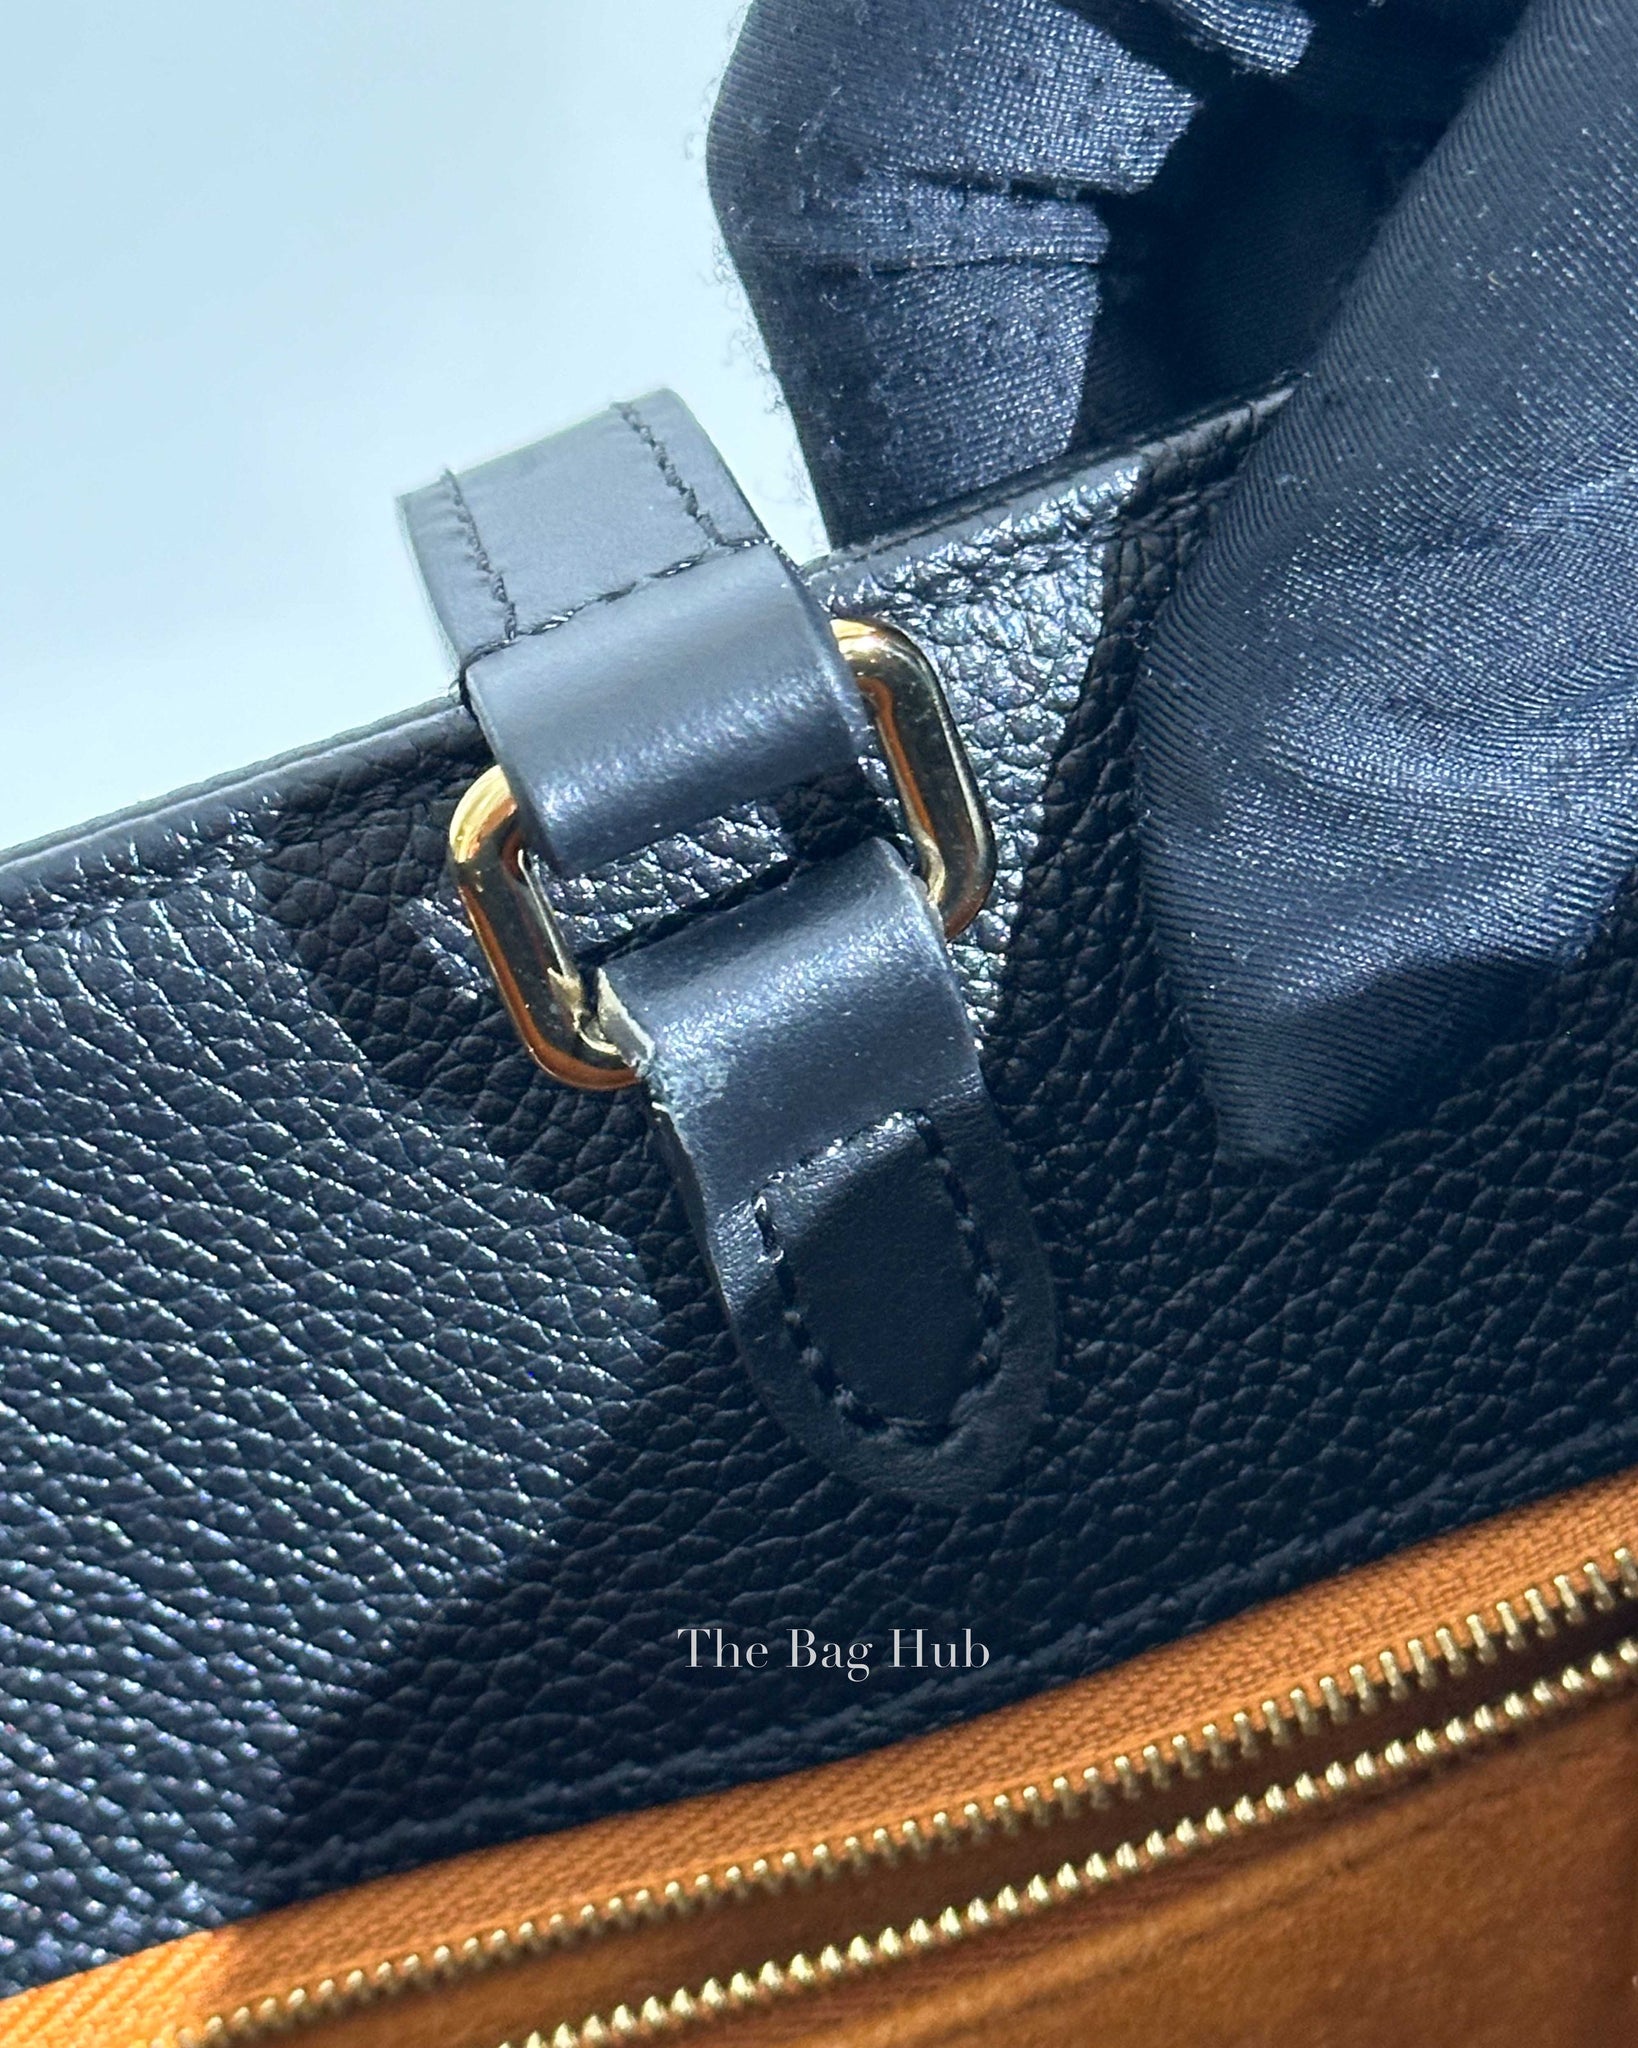 Louis Vuitton Black Monogram Empreinte Leather On The Go PM Tote Bag